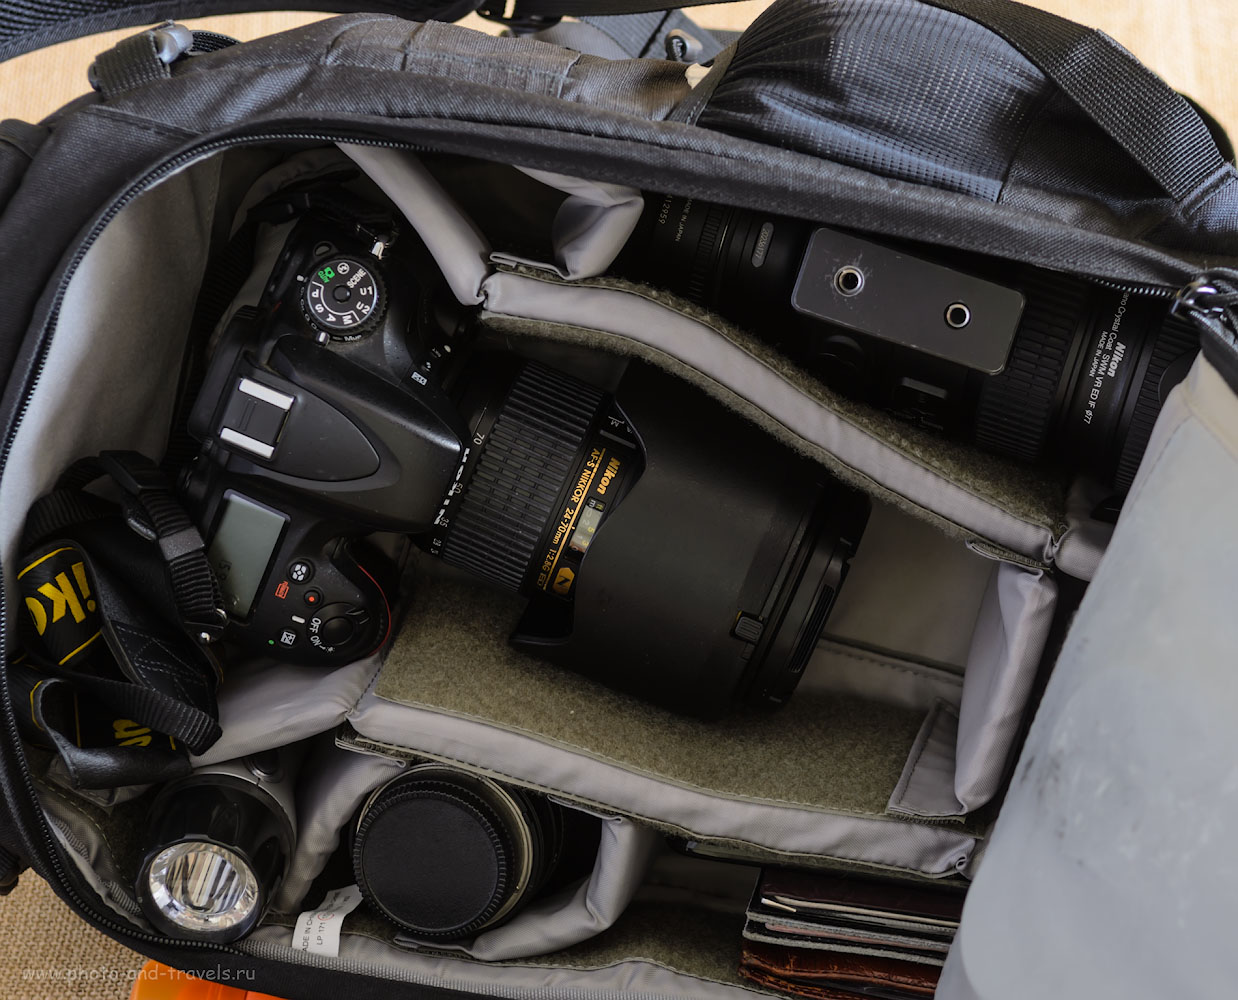 Фотография 8. Объемная камера фоторюкзака Lowepro Flipside 400 AW позволяет одновременно держать накрученным на тушку Nikon D610 репортажник Nikon 24-70mm f/2.8 и есть место для телевика Nikon 70-200mm f/2.8.